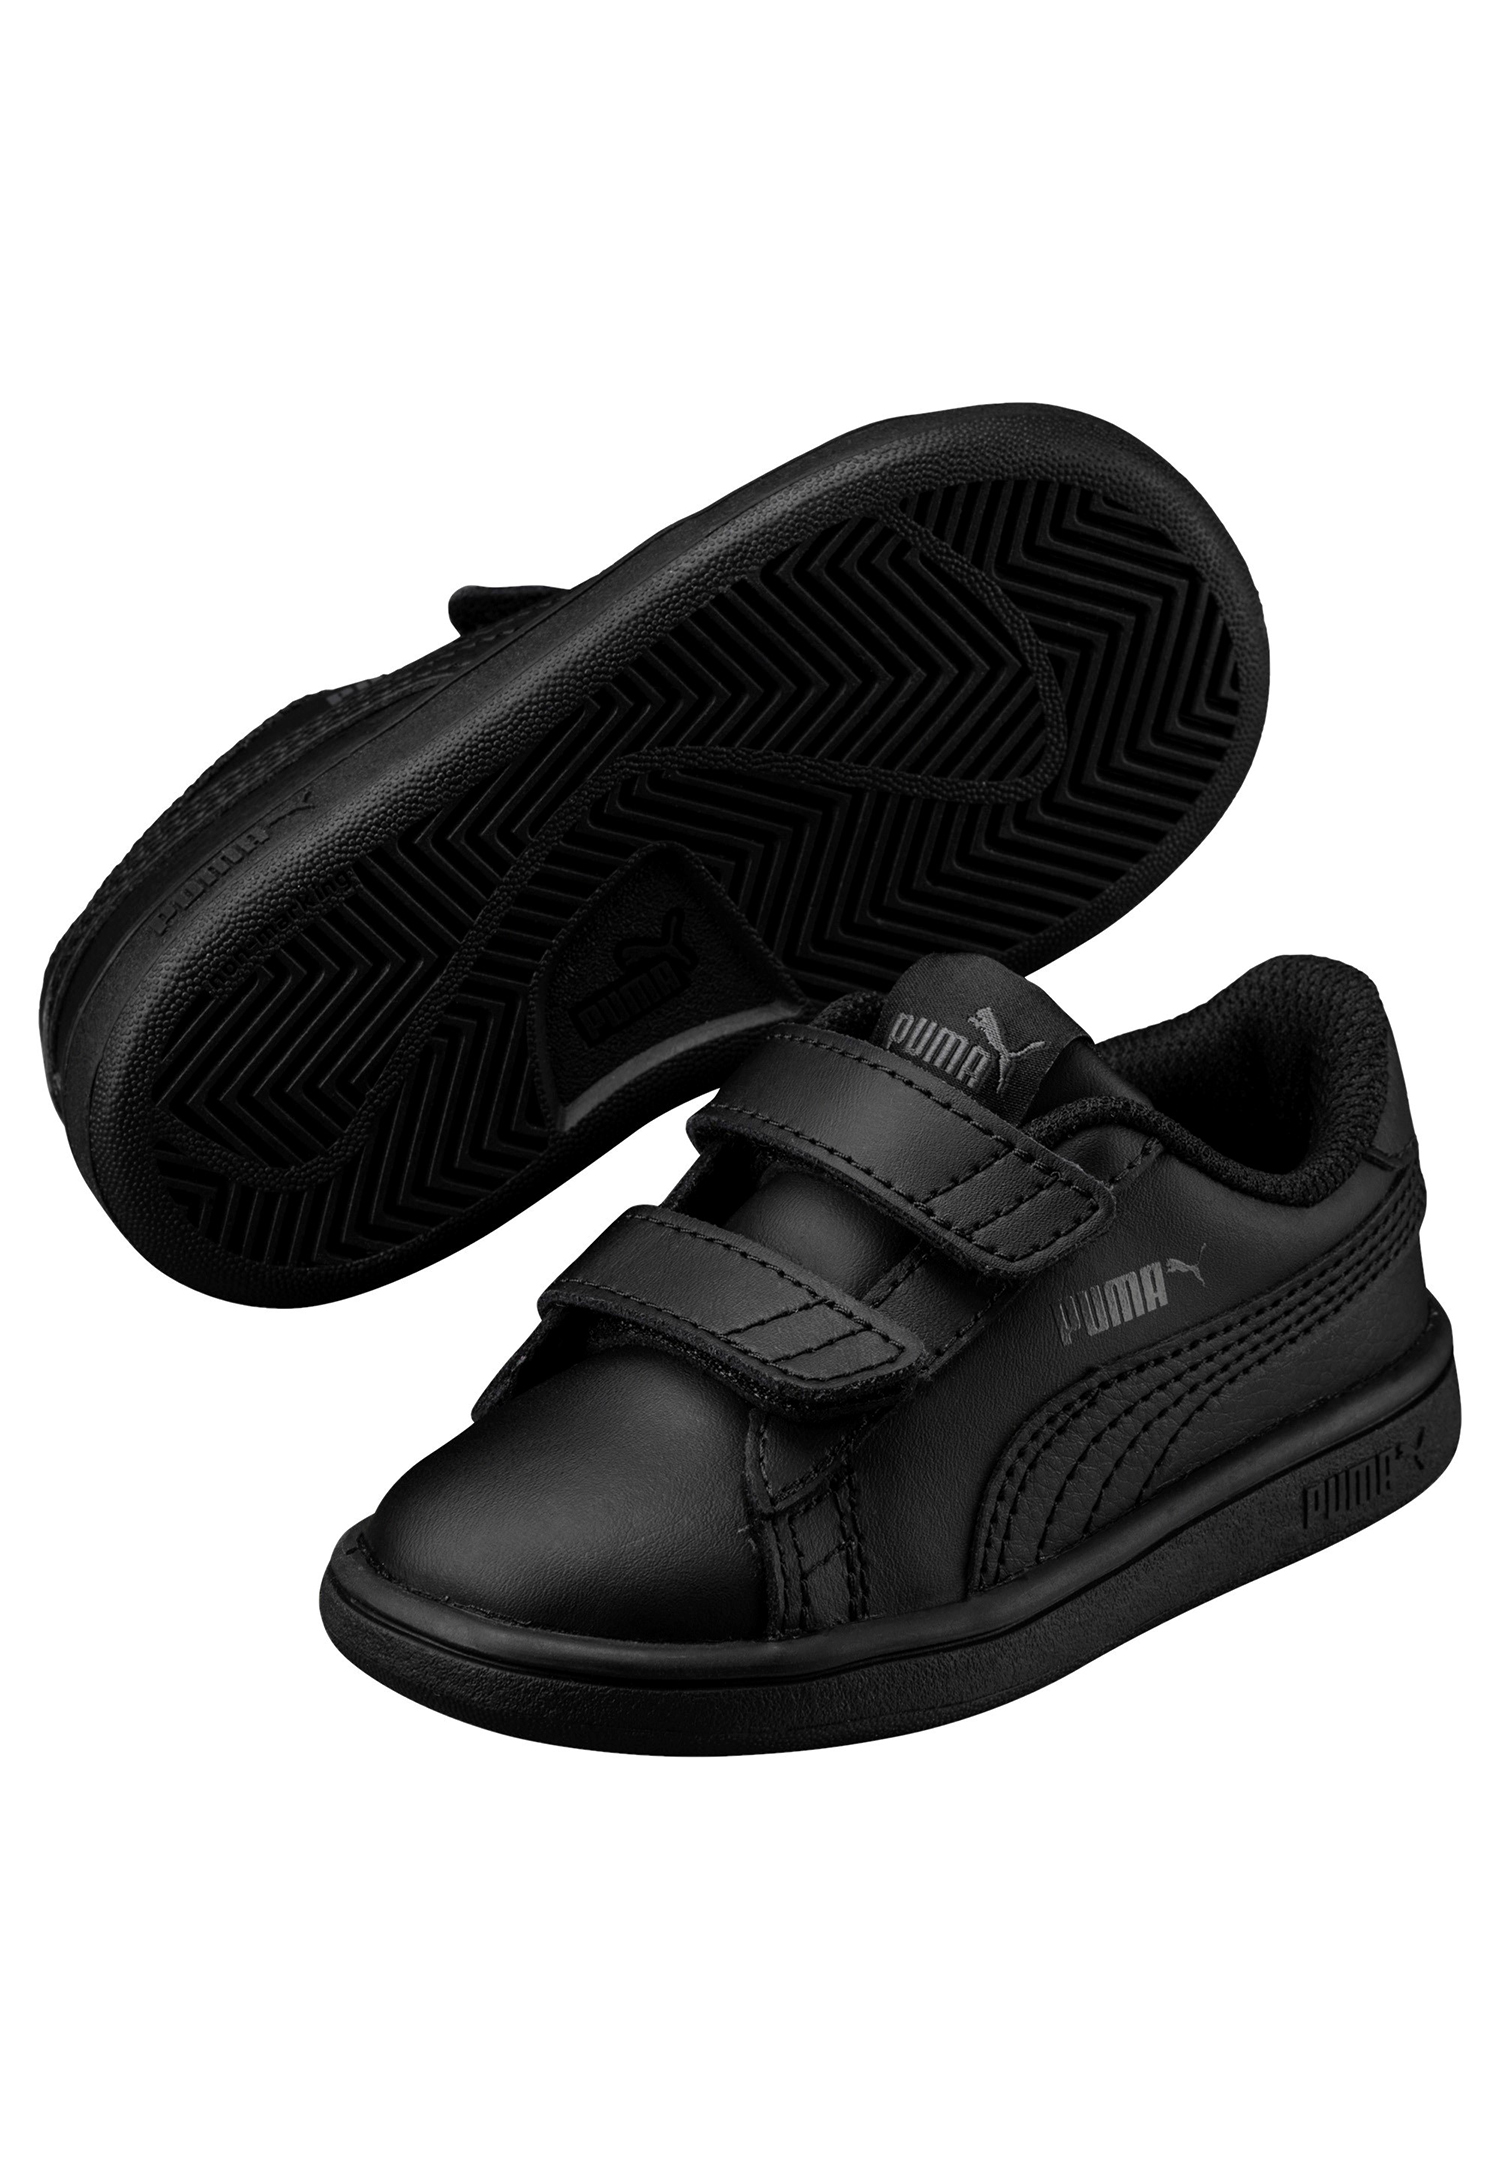 PUMA Smash v2 L V INF Kids Sneaker Schuhe schwarz 365174 01 von Puma